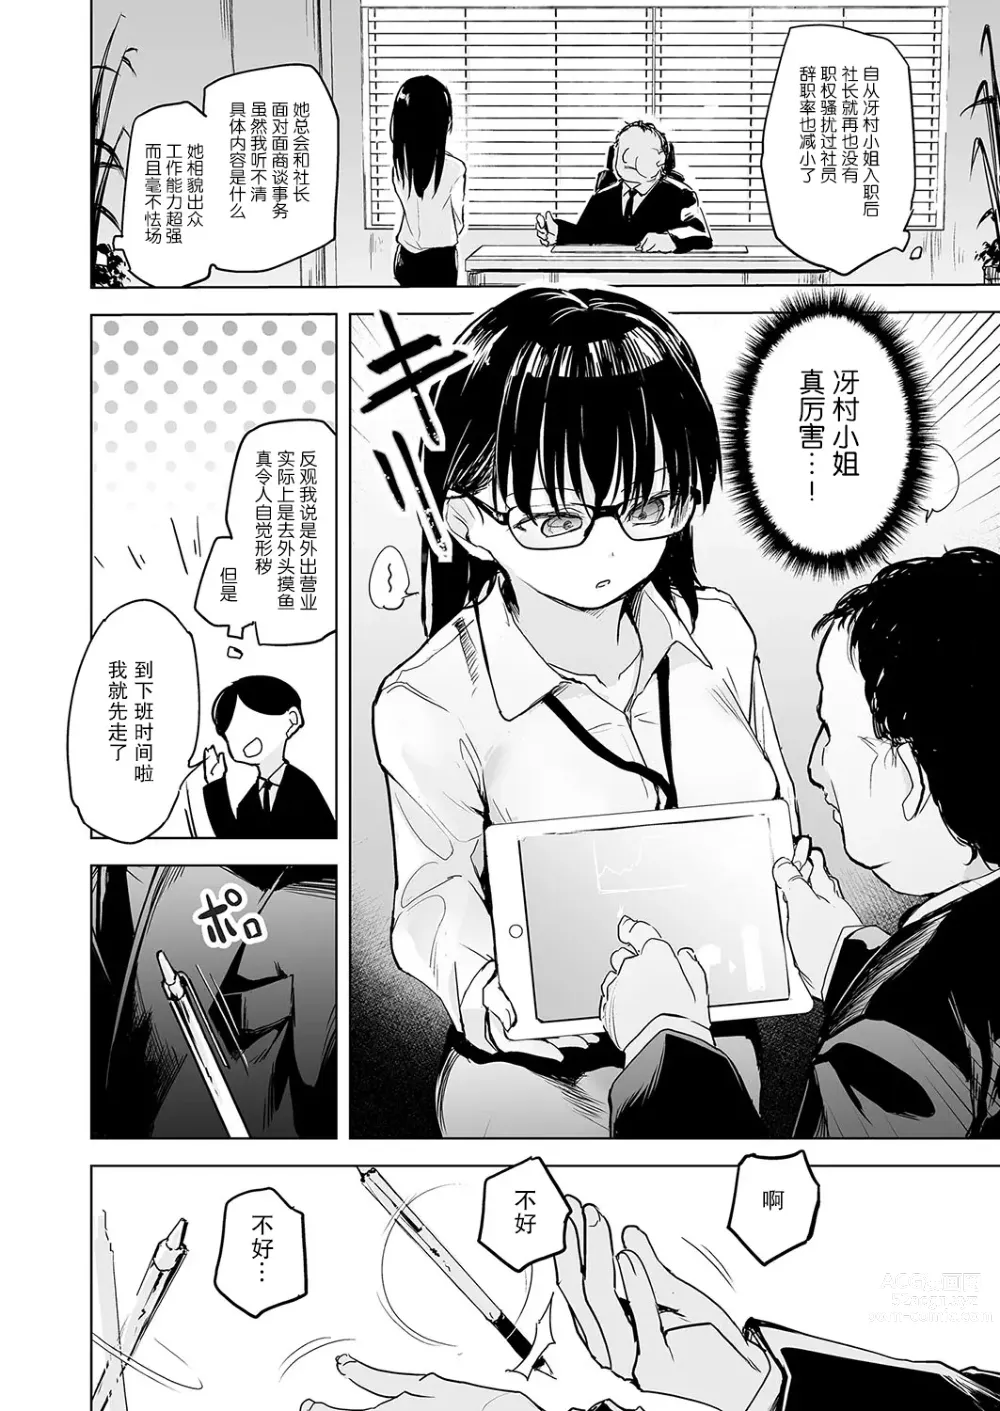 Page 2 of manga Pawahara no shoseijutsu